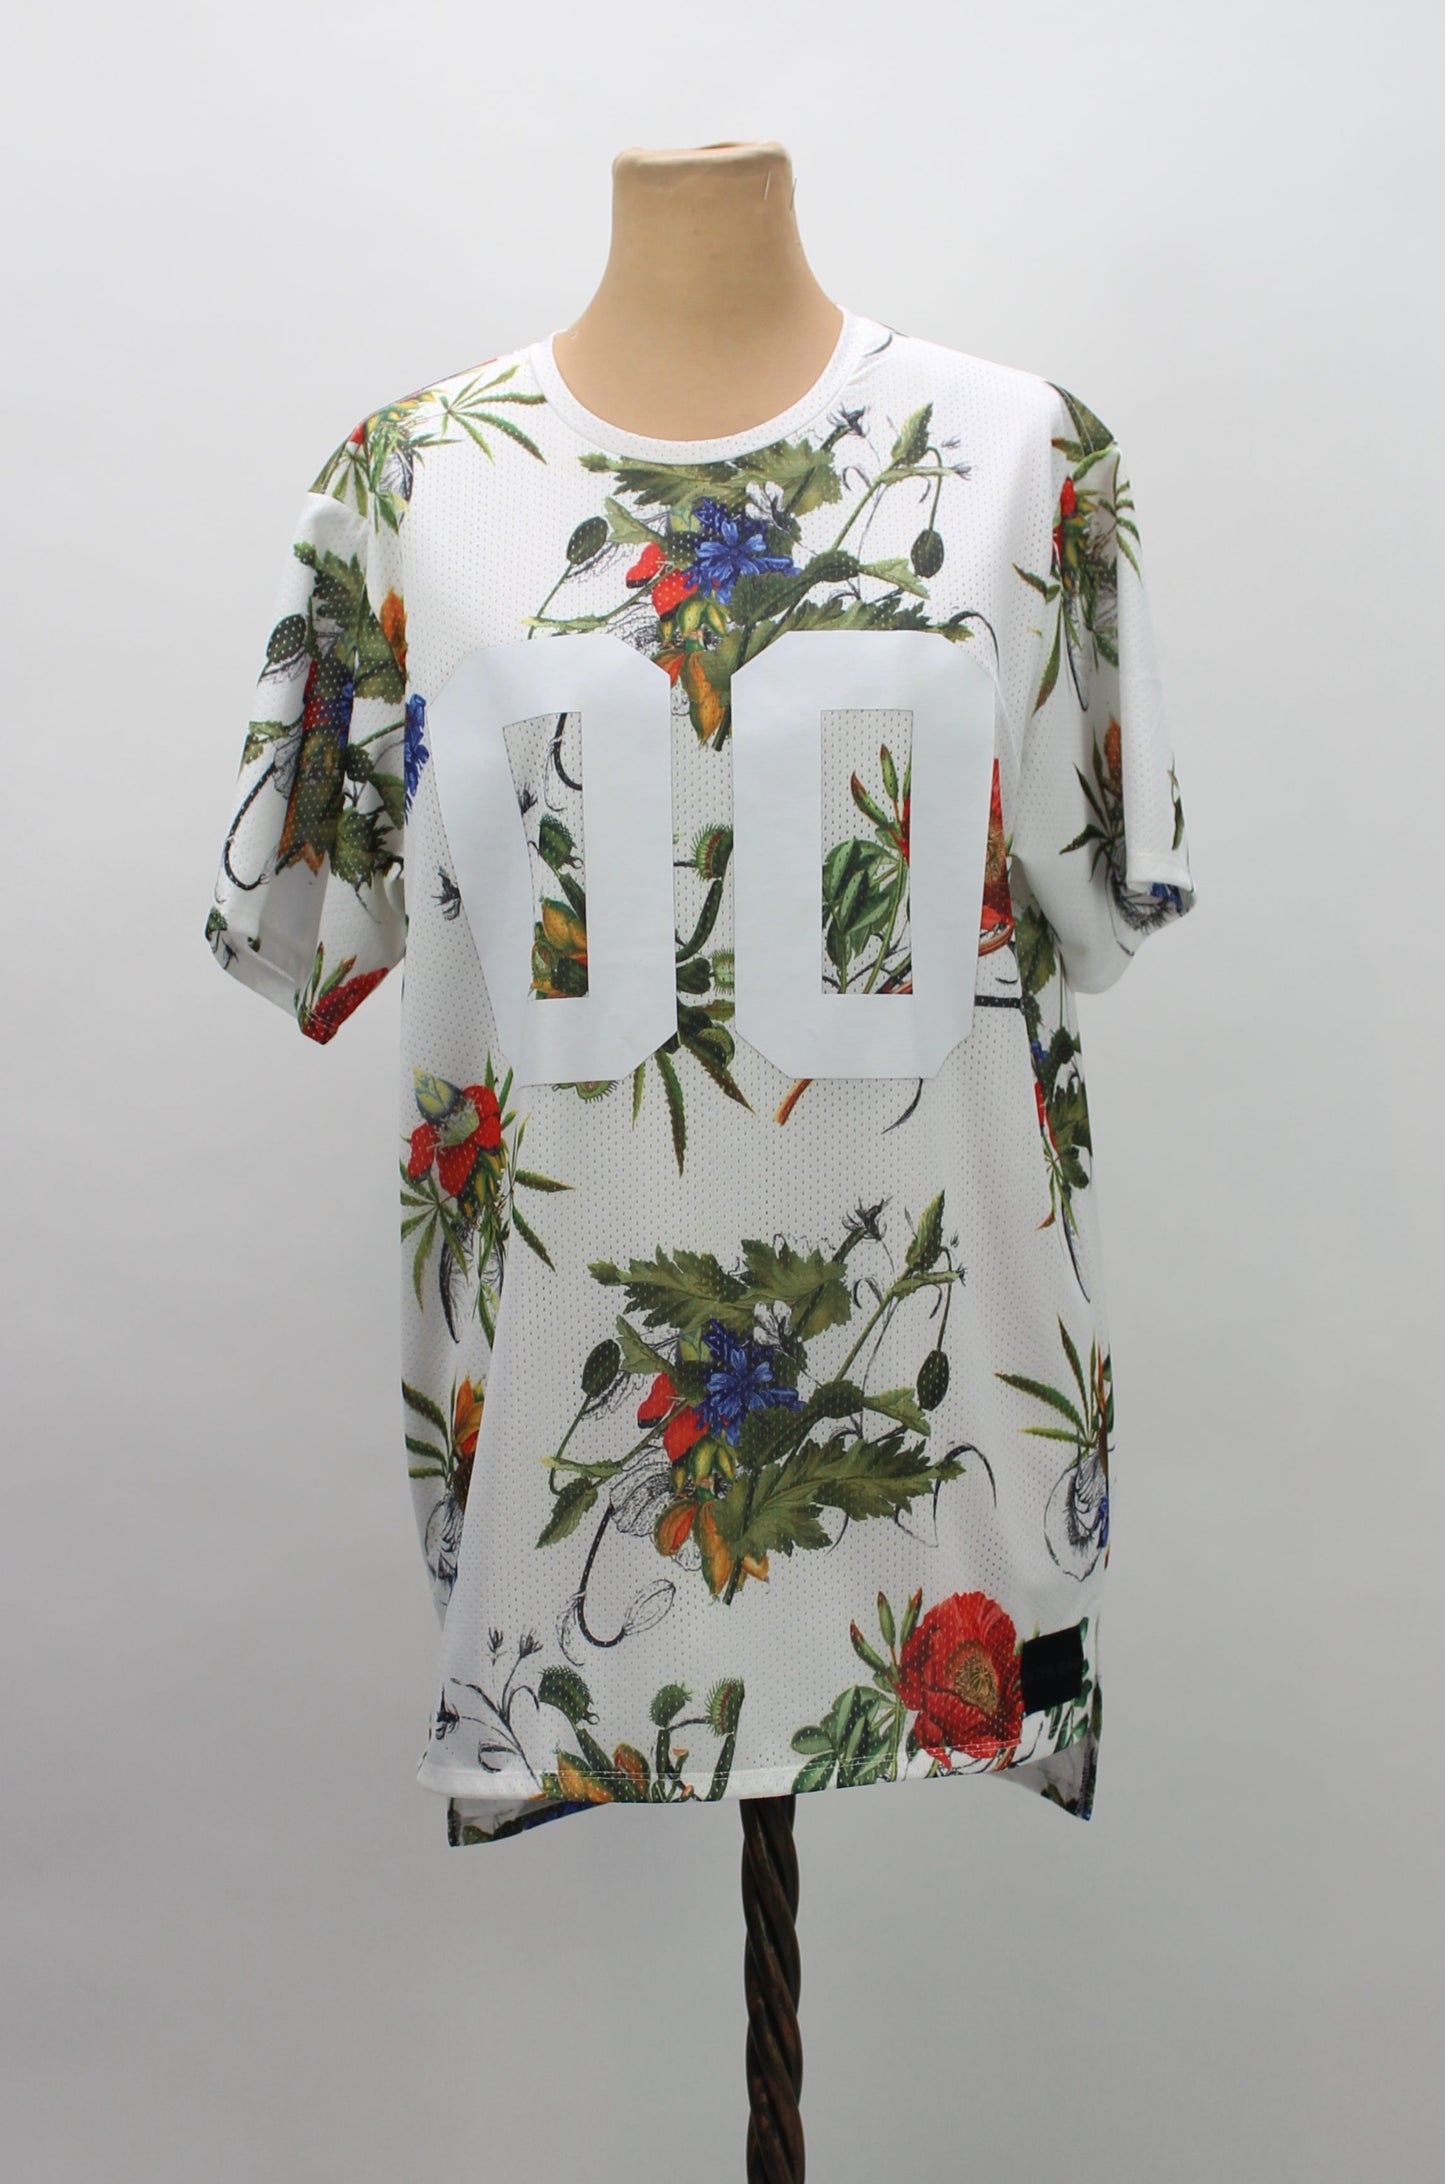 Women's Floral Print Athletic Shirt - Size L